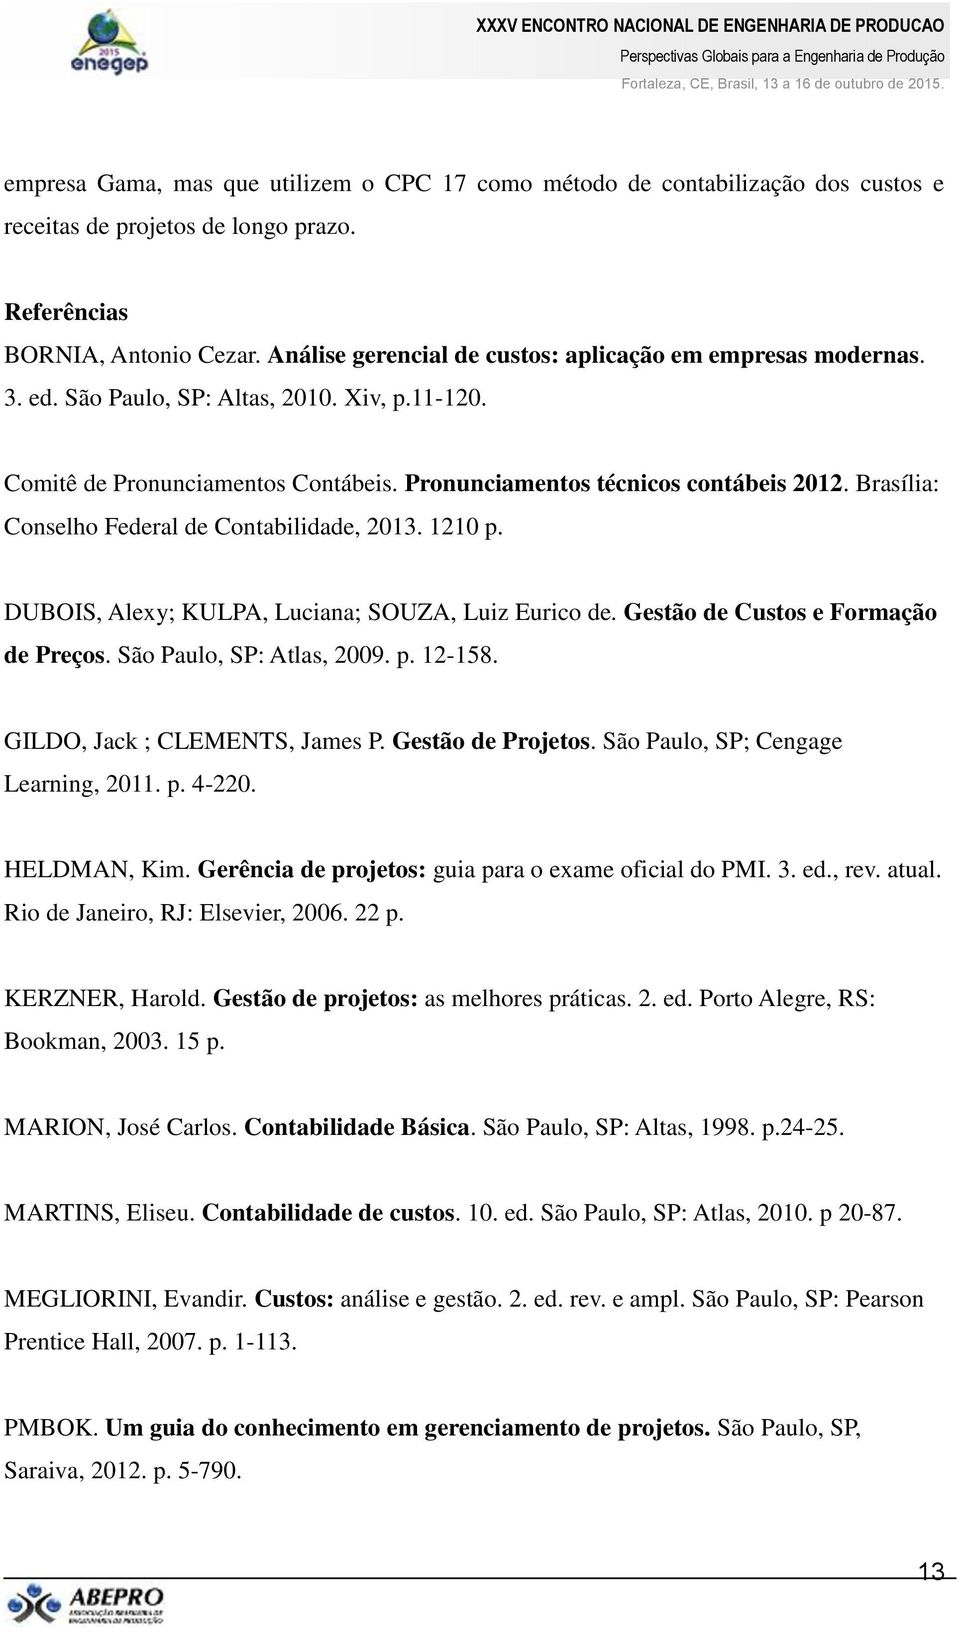 Brasília: Conselho Federal de Contabilidade, 2013. 1210 p. DUBOIS, Alexy; KULPA, Luciana; SOUZA, Luiz Eurico de. Gestão de Custos e Formação de Preços. São Paulo, SP: Atlas, 2009. p. 12-158.